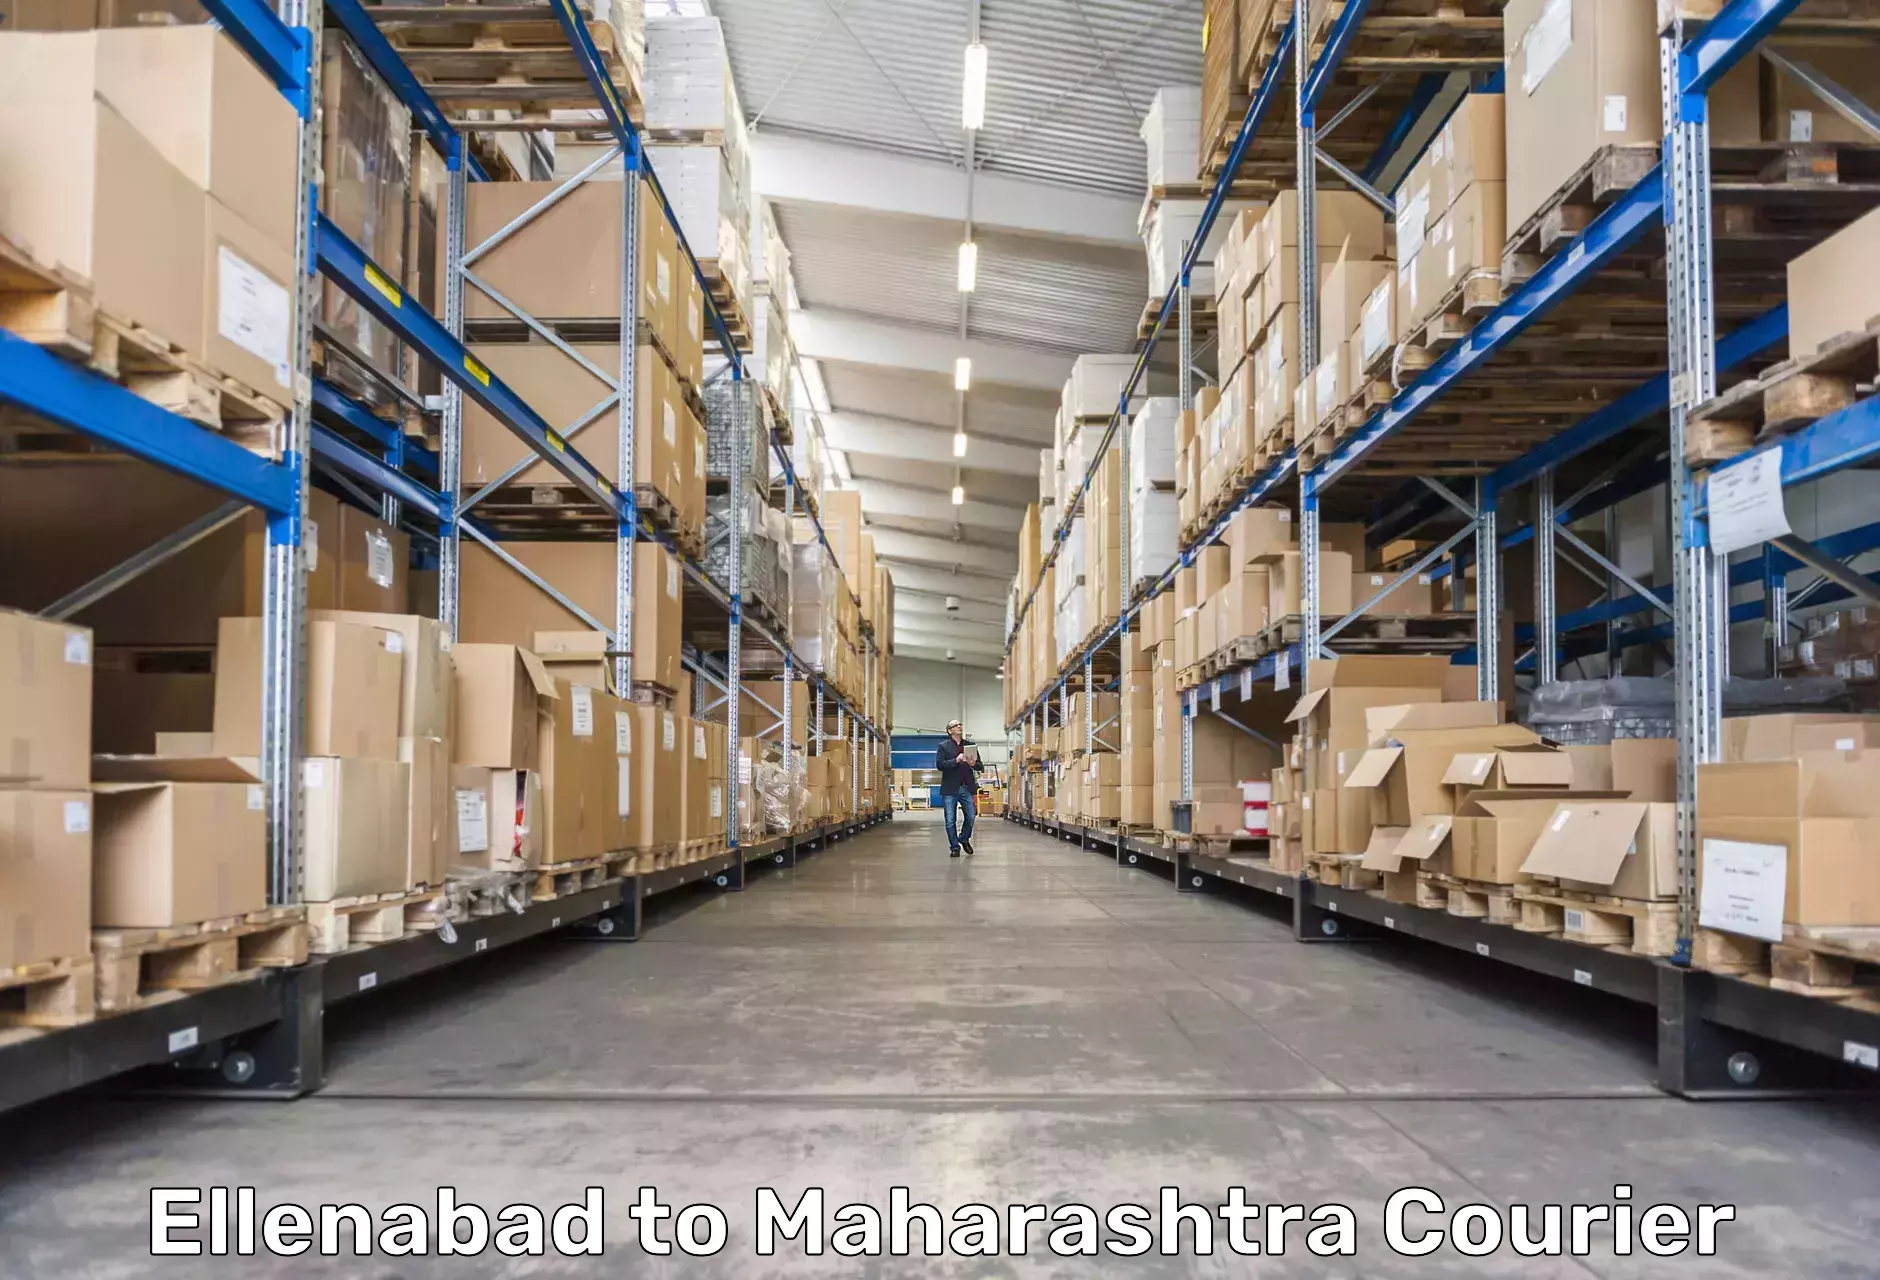 Comprehensive parcel tracking Ellenabad to Nashik